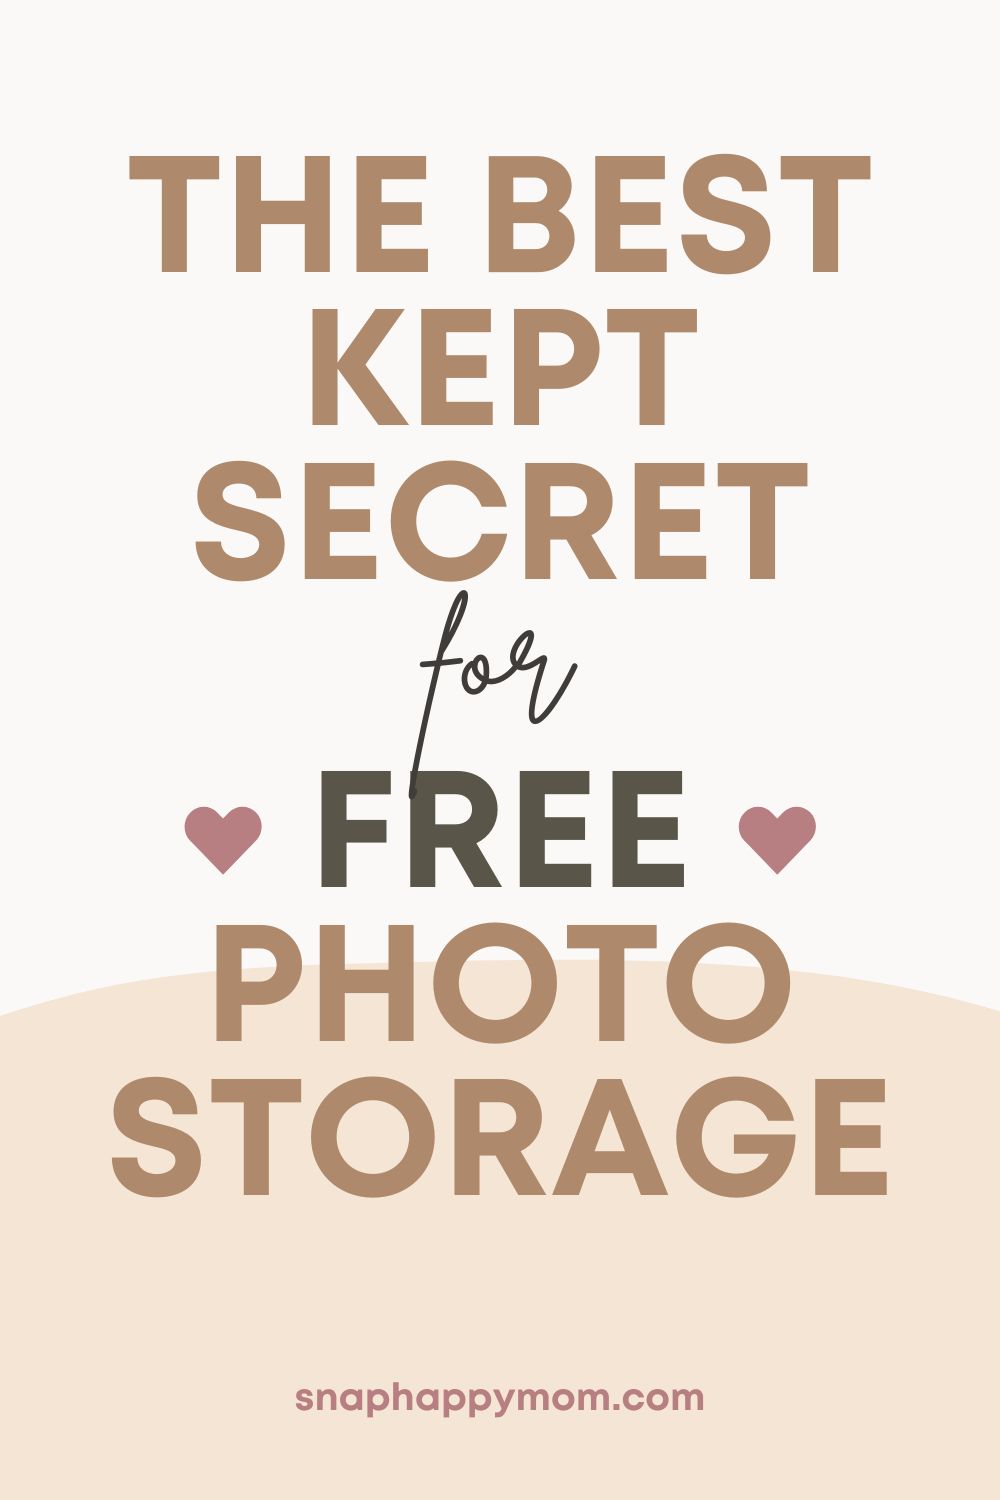 Je Amazon Photo Storage opravdu zdarma?